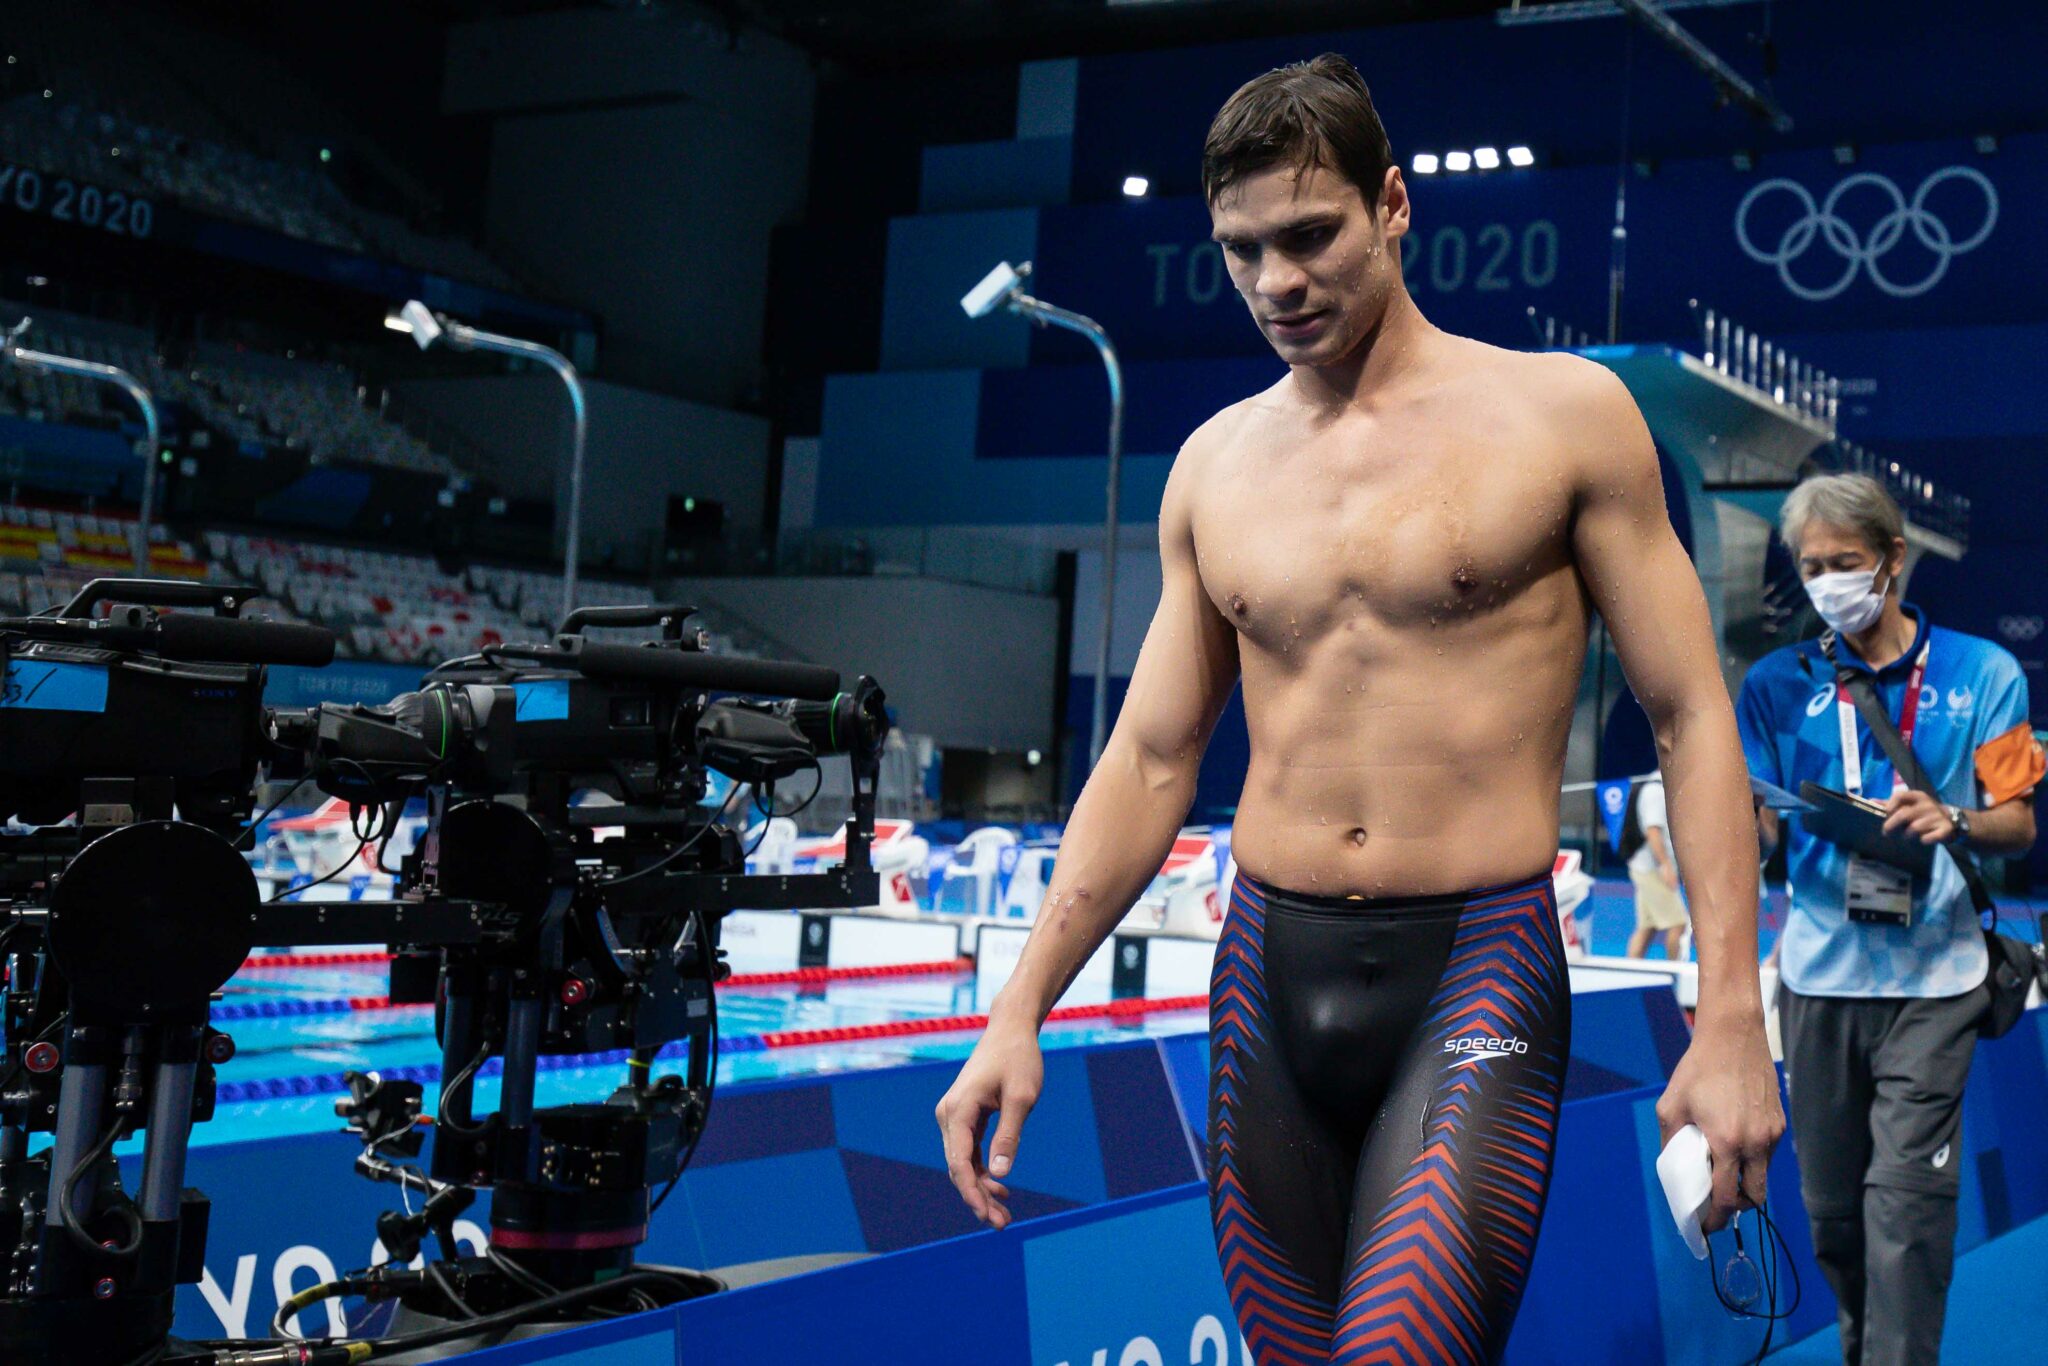 Nadadores russos excluídos dos Jogos por doping são readmitidos por  federação - Jornal O Globo